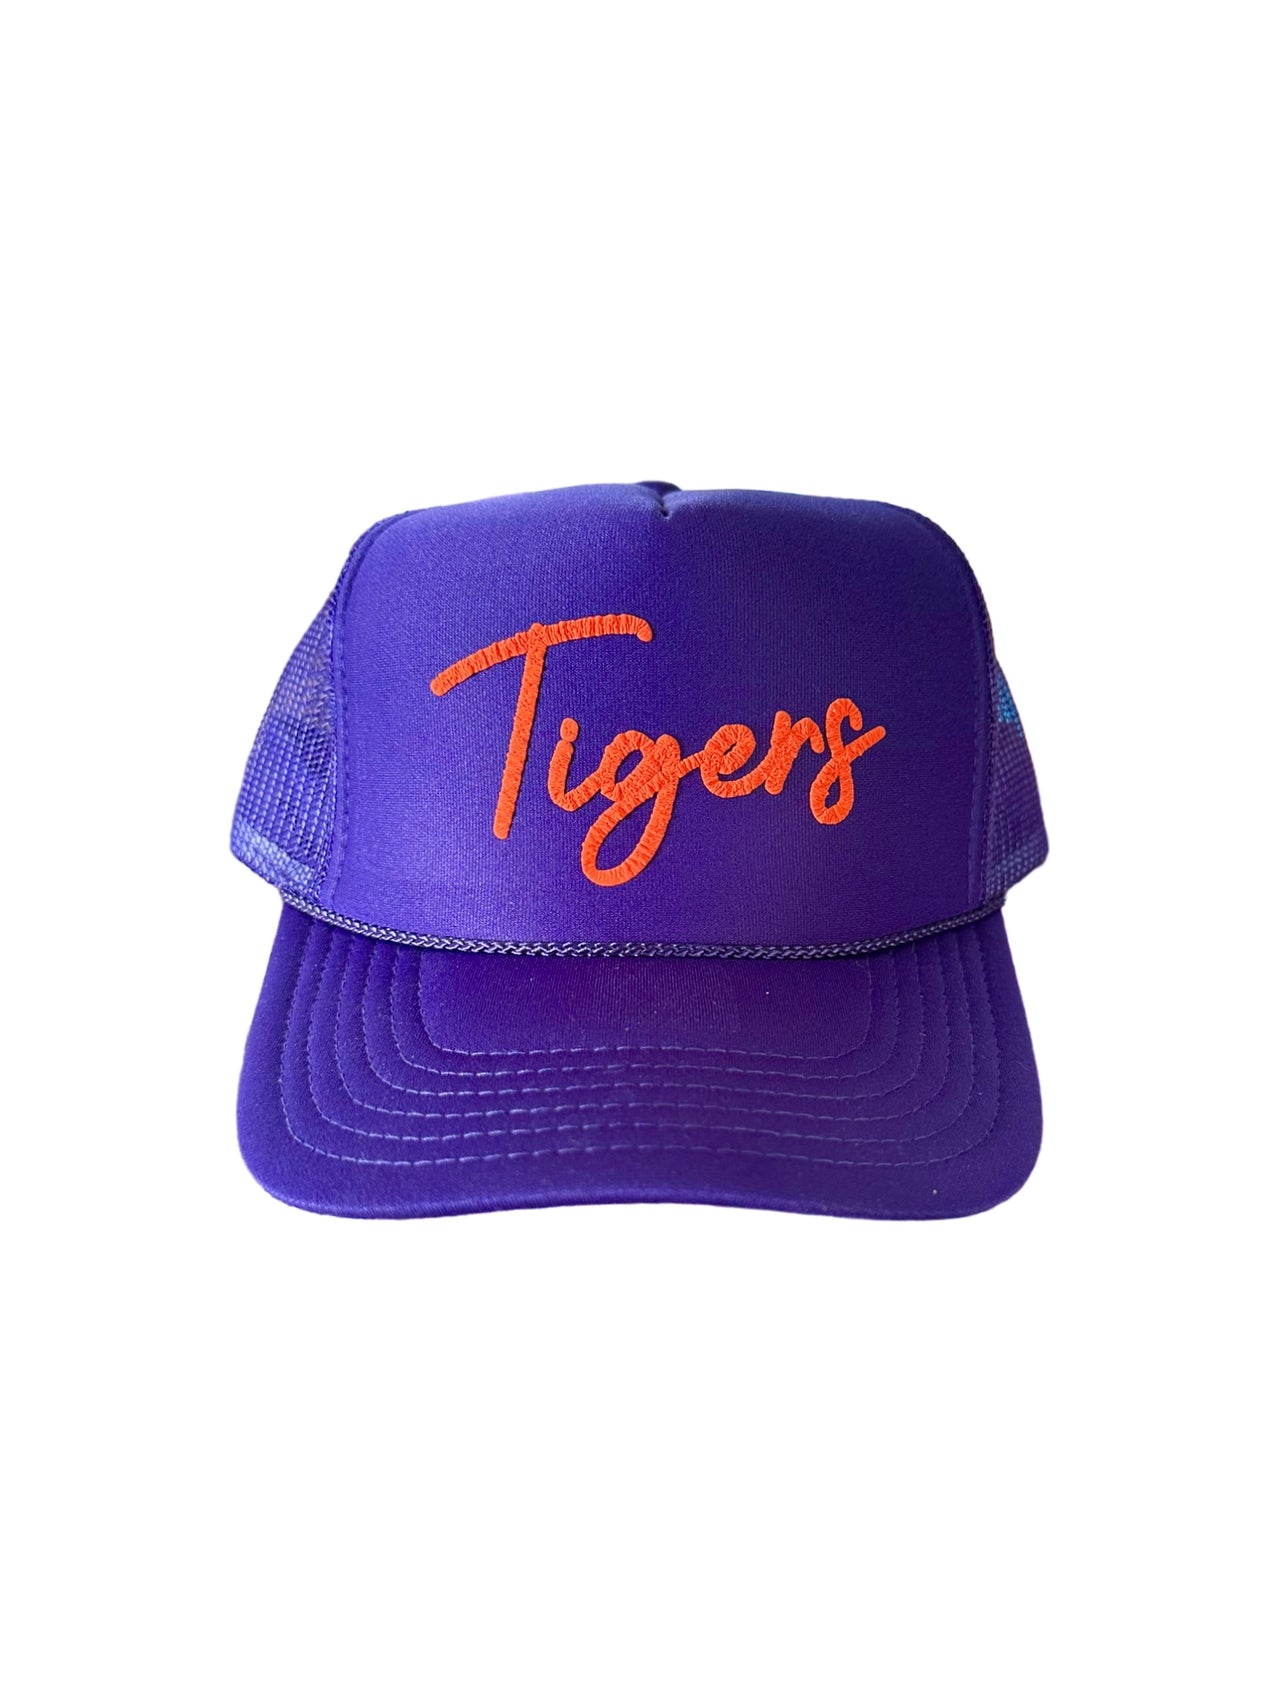 Tigers (Purple) - Puffy Trucker